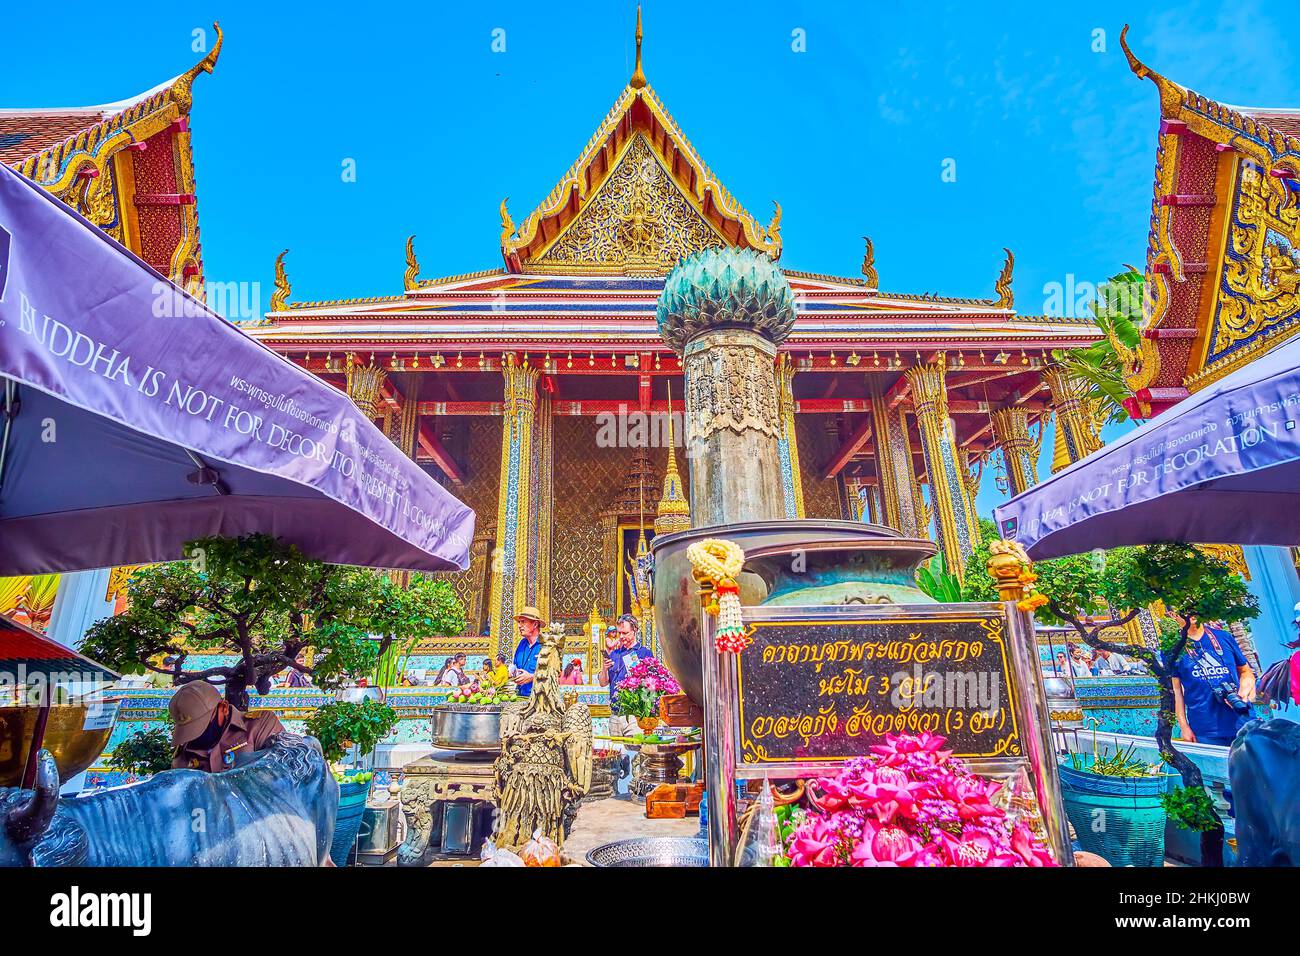 BANGKOK, THAILAND - MAY 12, 2019: The crowded outdoor altar at the main entrance to Ubosot in Grand Palace, on May 12 in Bangkok, Thailand Stock Photo